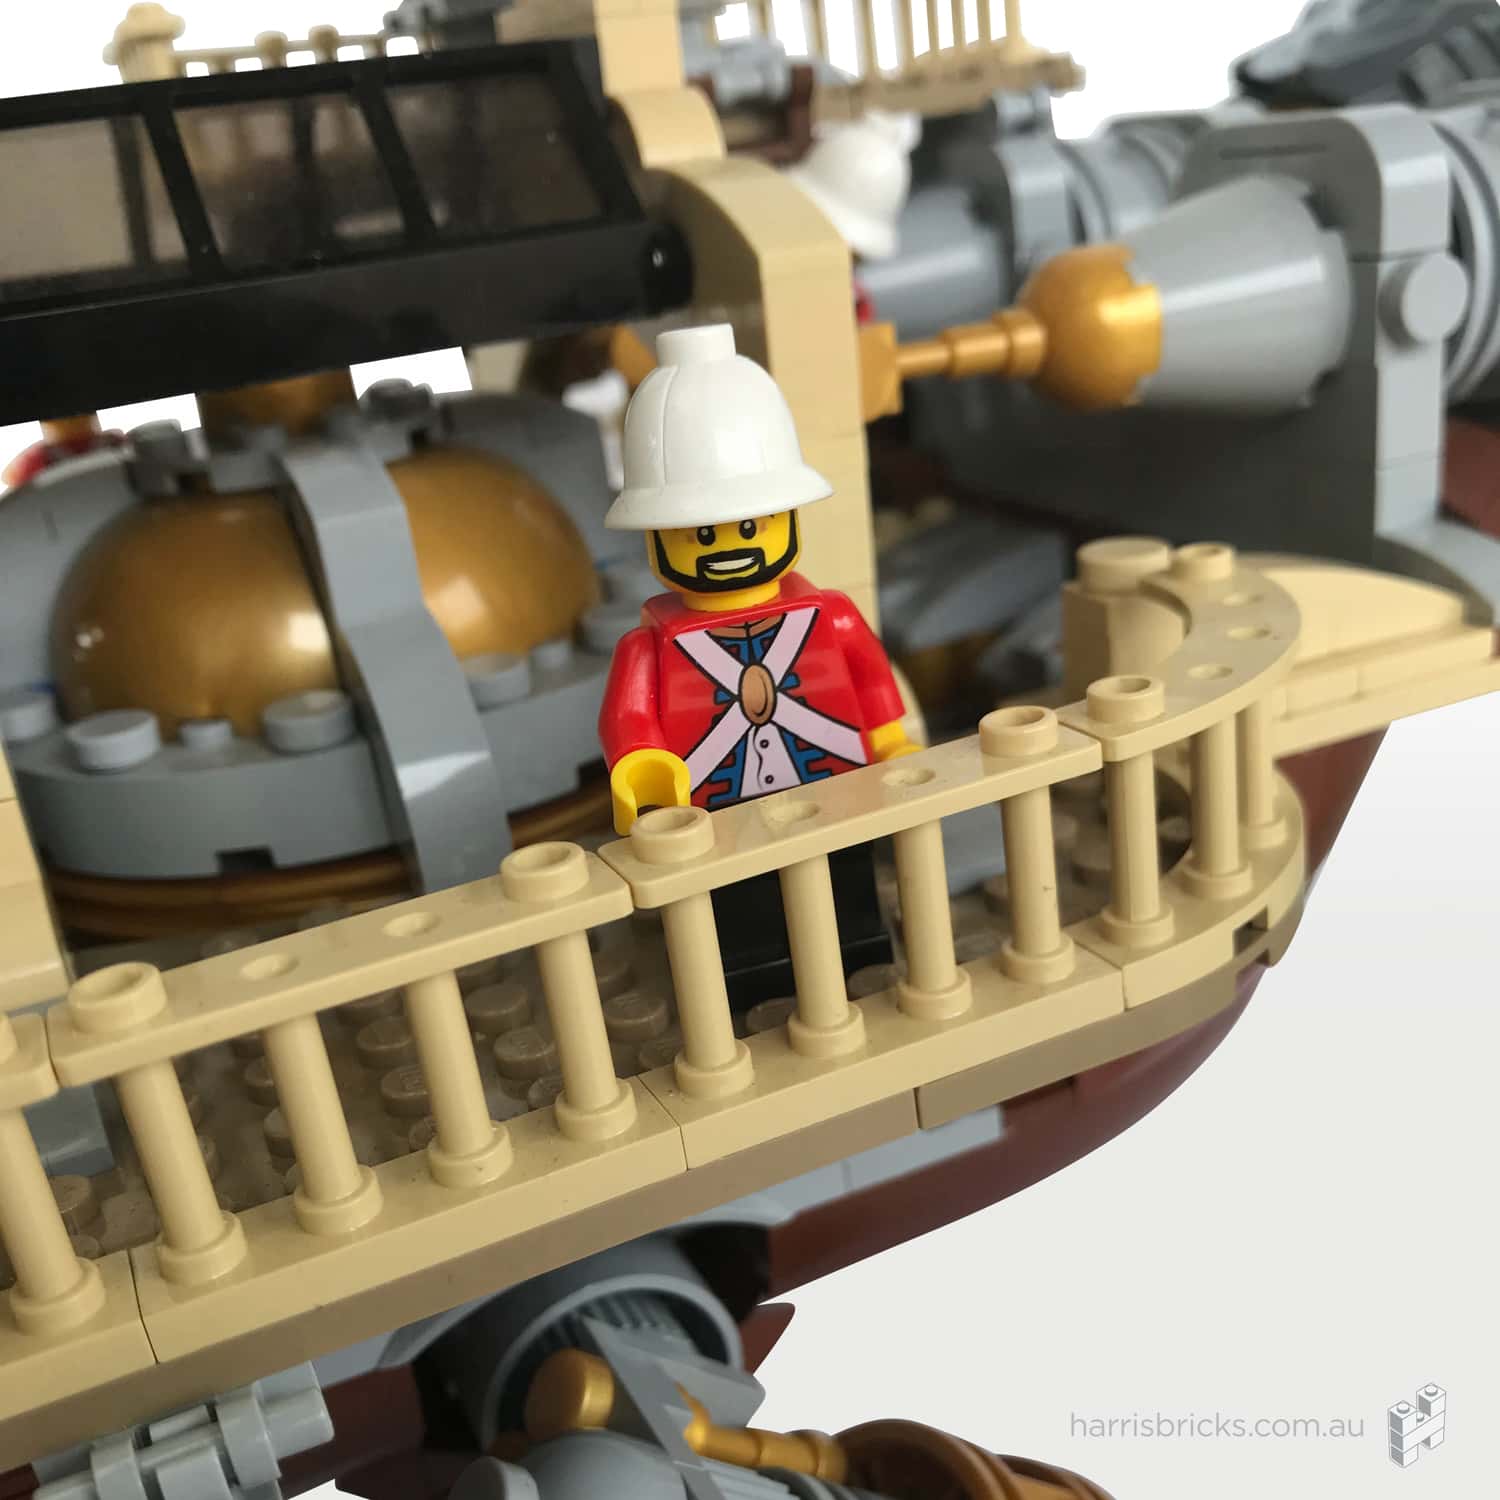 LEGO Steampunk Ship Imperial Airship Bricktania